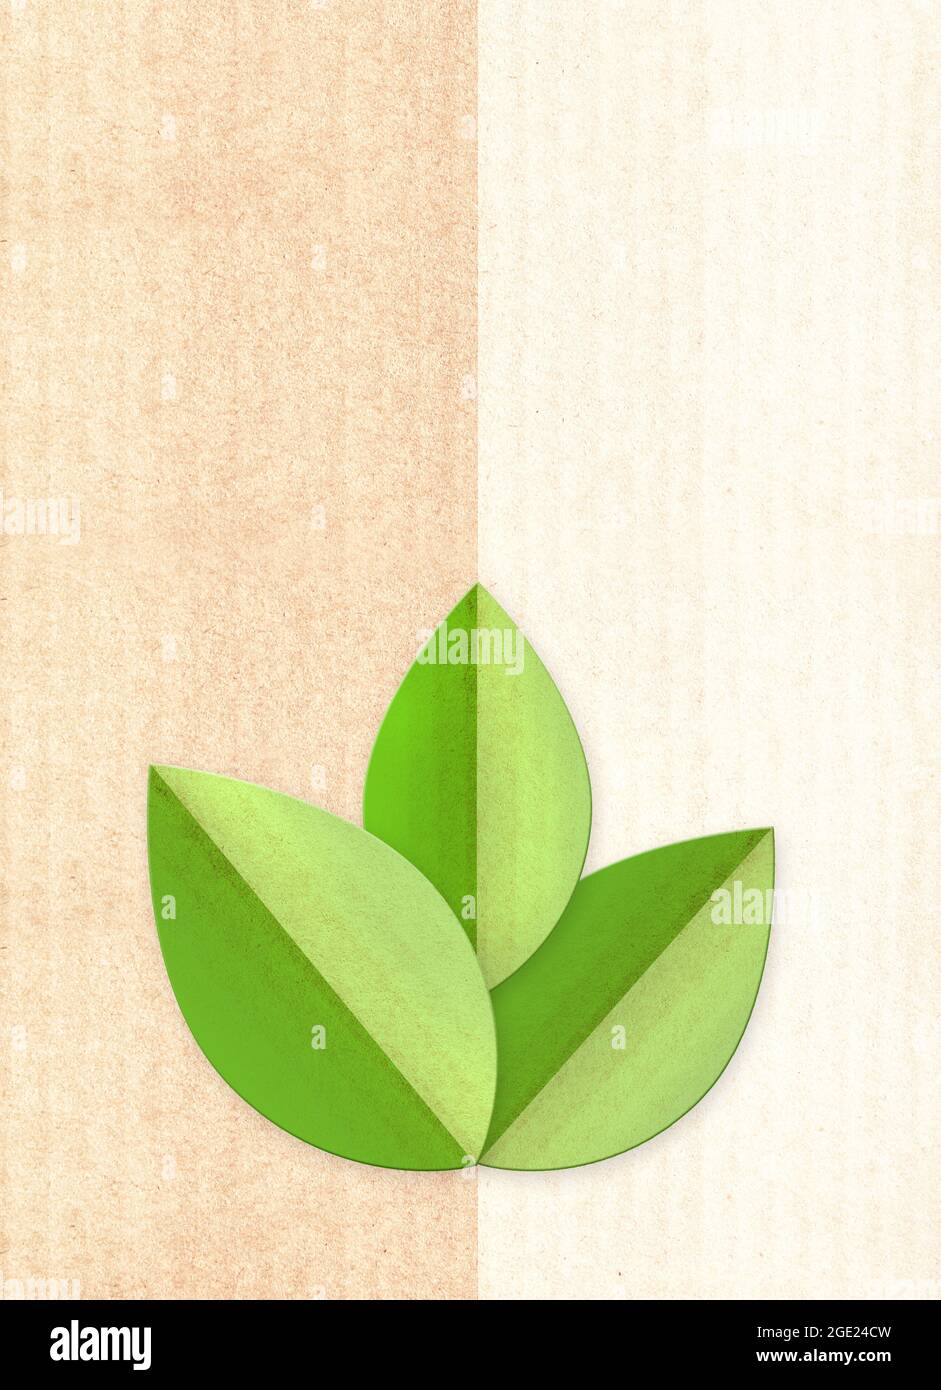 Fondo de cartón de papel con hojas verdes en forma de papel cortado. Banner  vertical con textura de papel ecológica. Material de cartón reciclado.  Espacio de copia para tex Fotografía de stock -